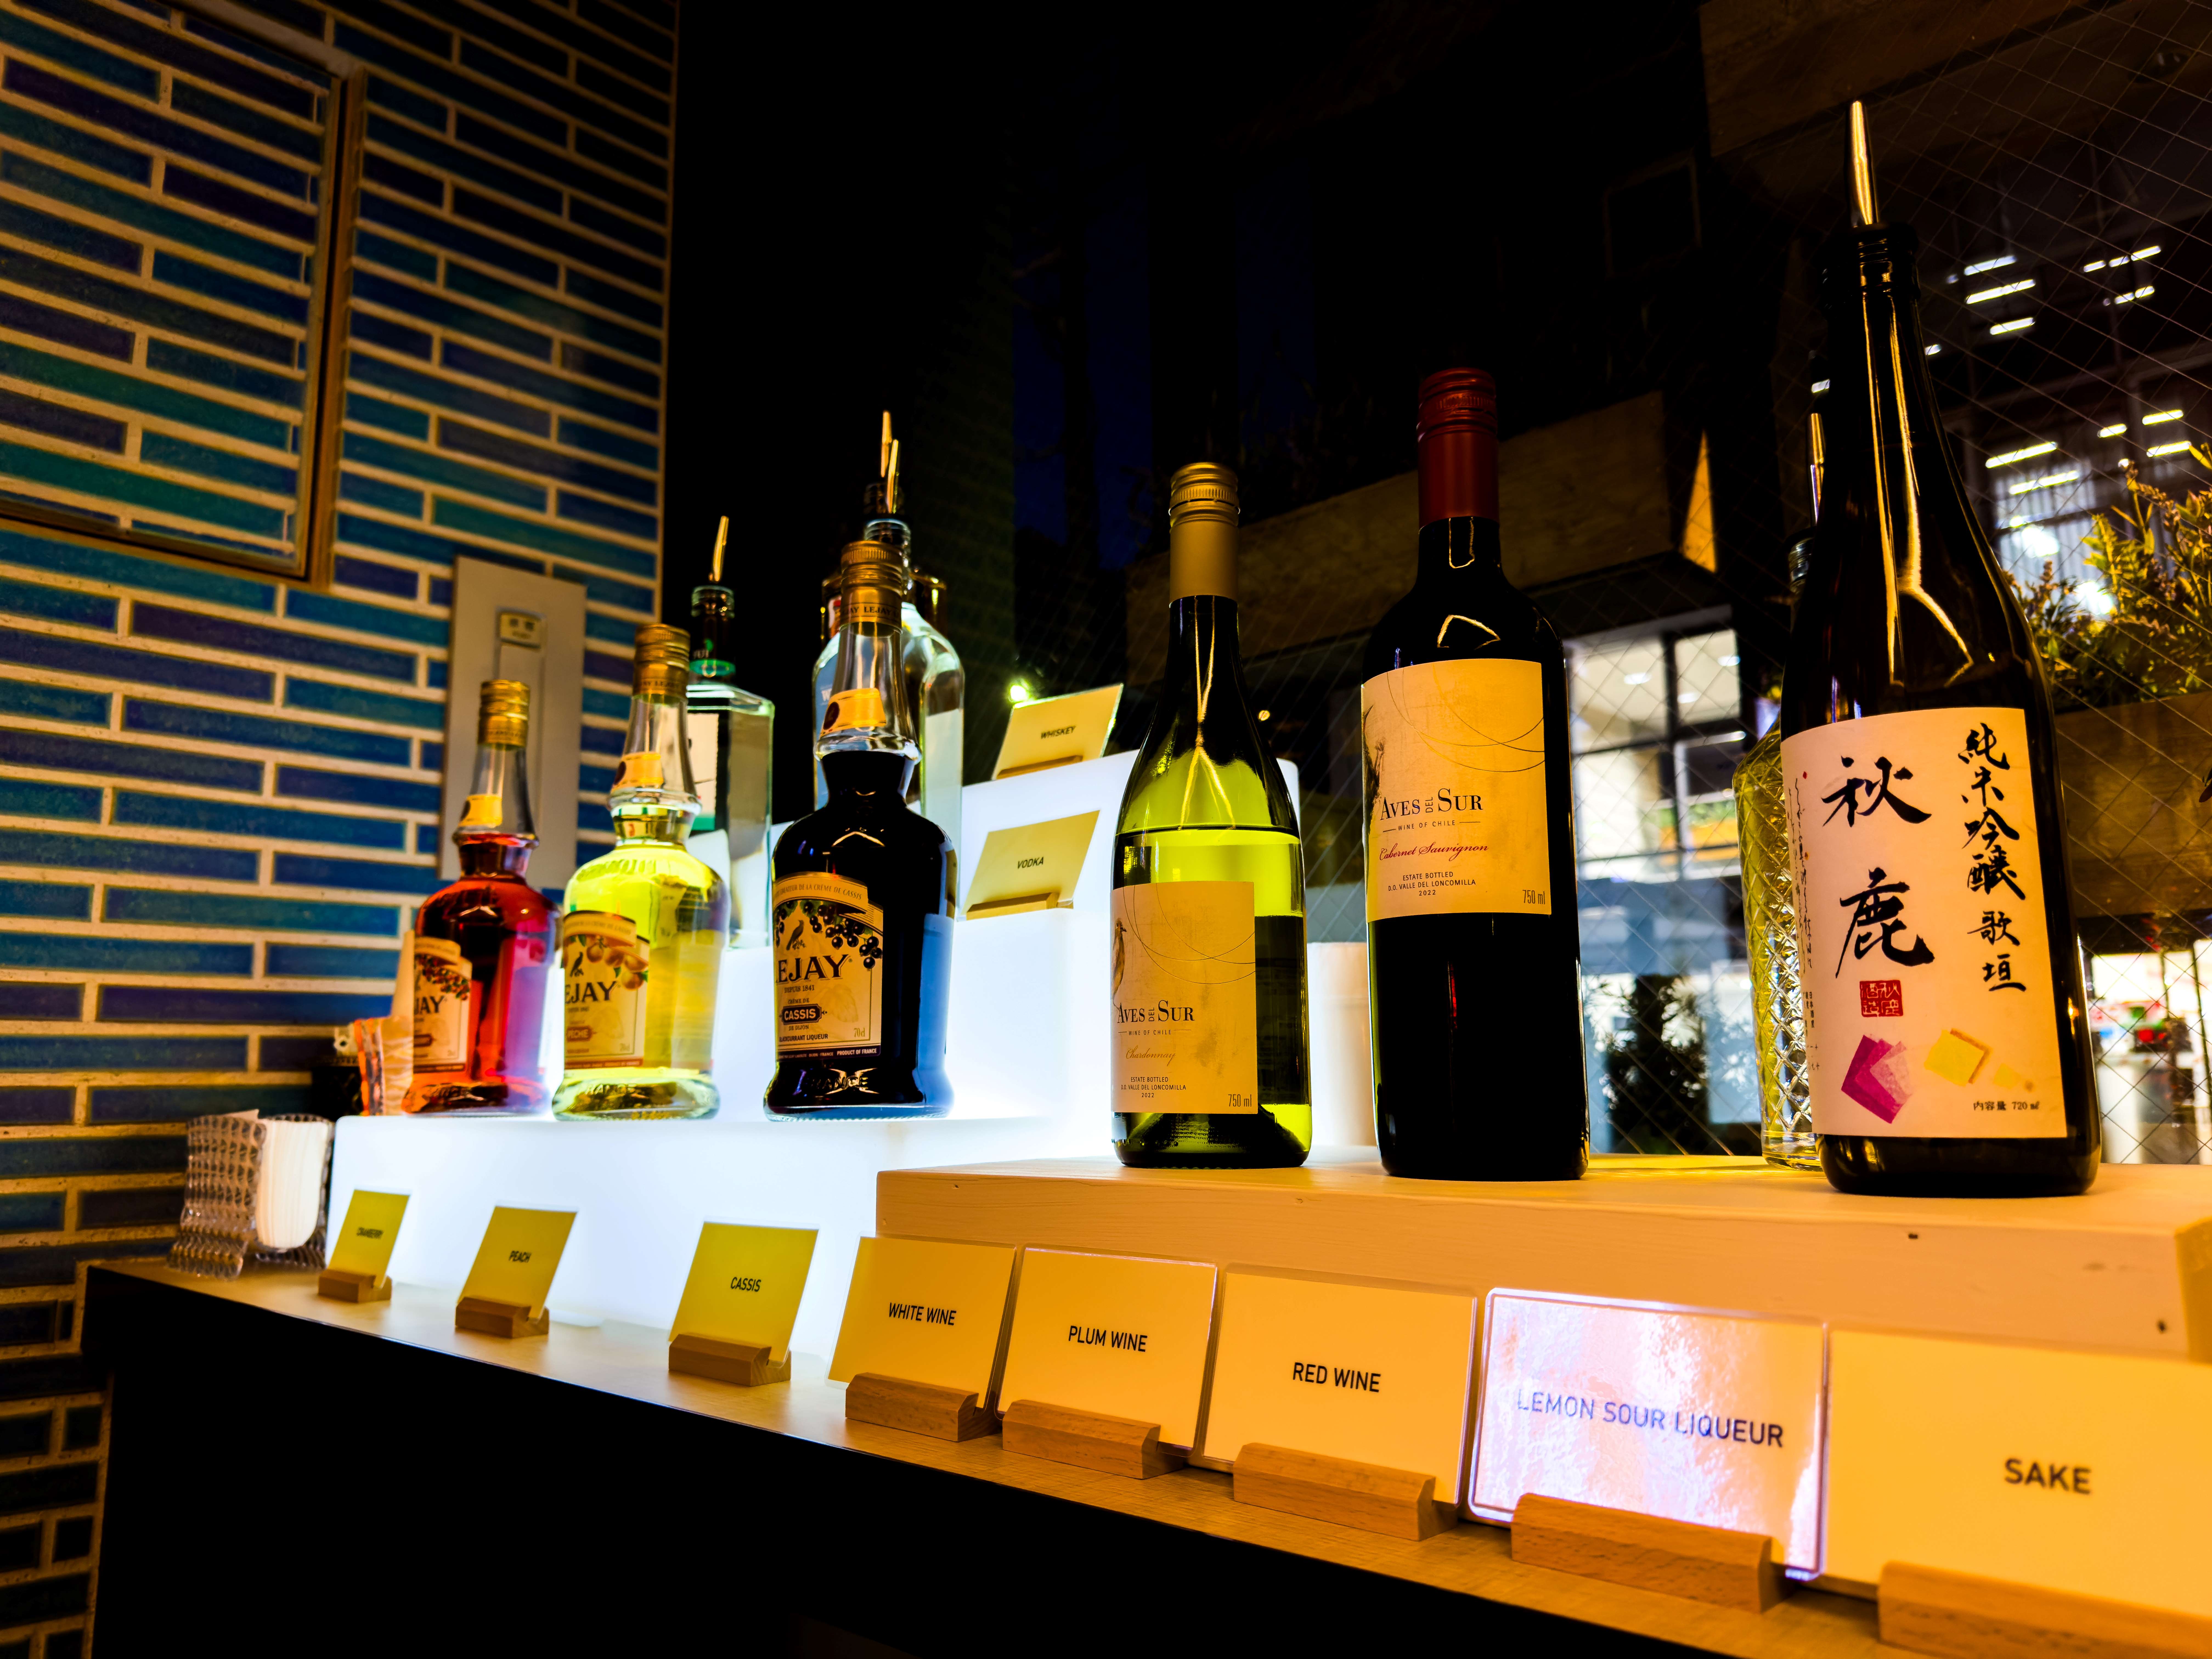 大阪の地酒「秋鹿」をお楽しみいただけます。